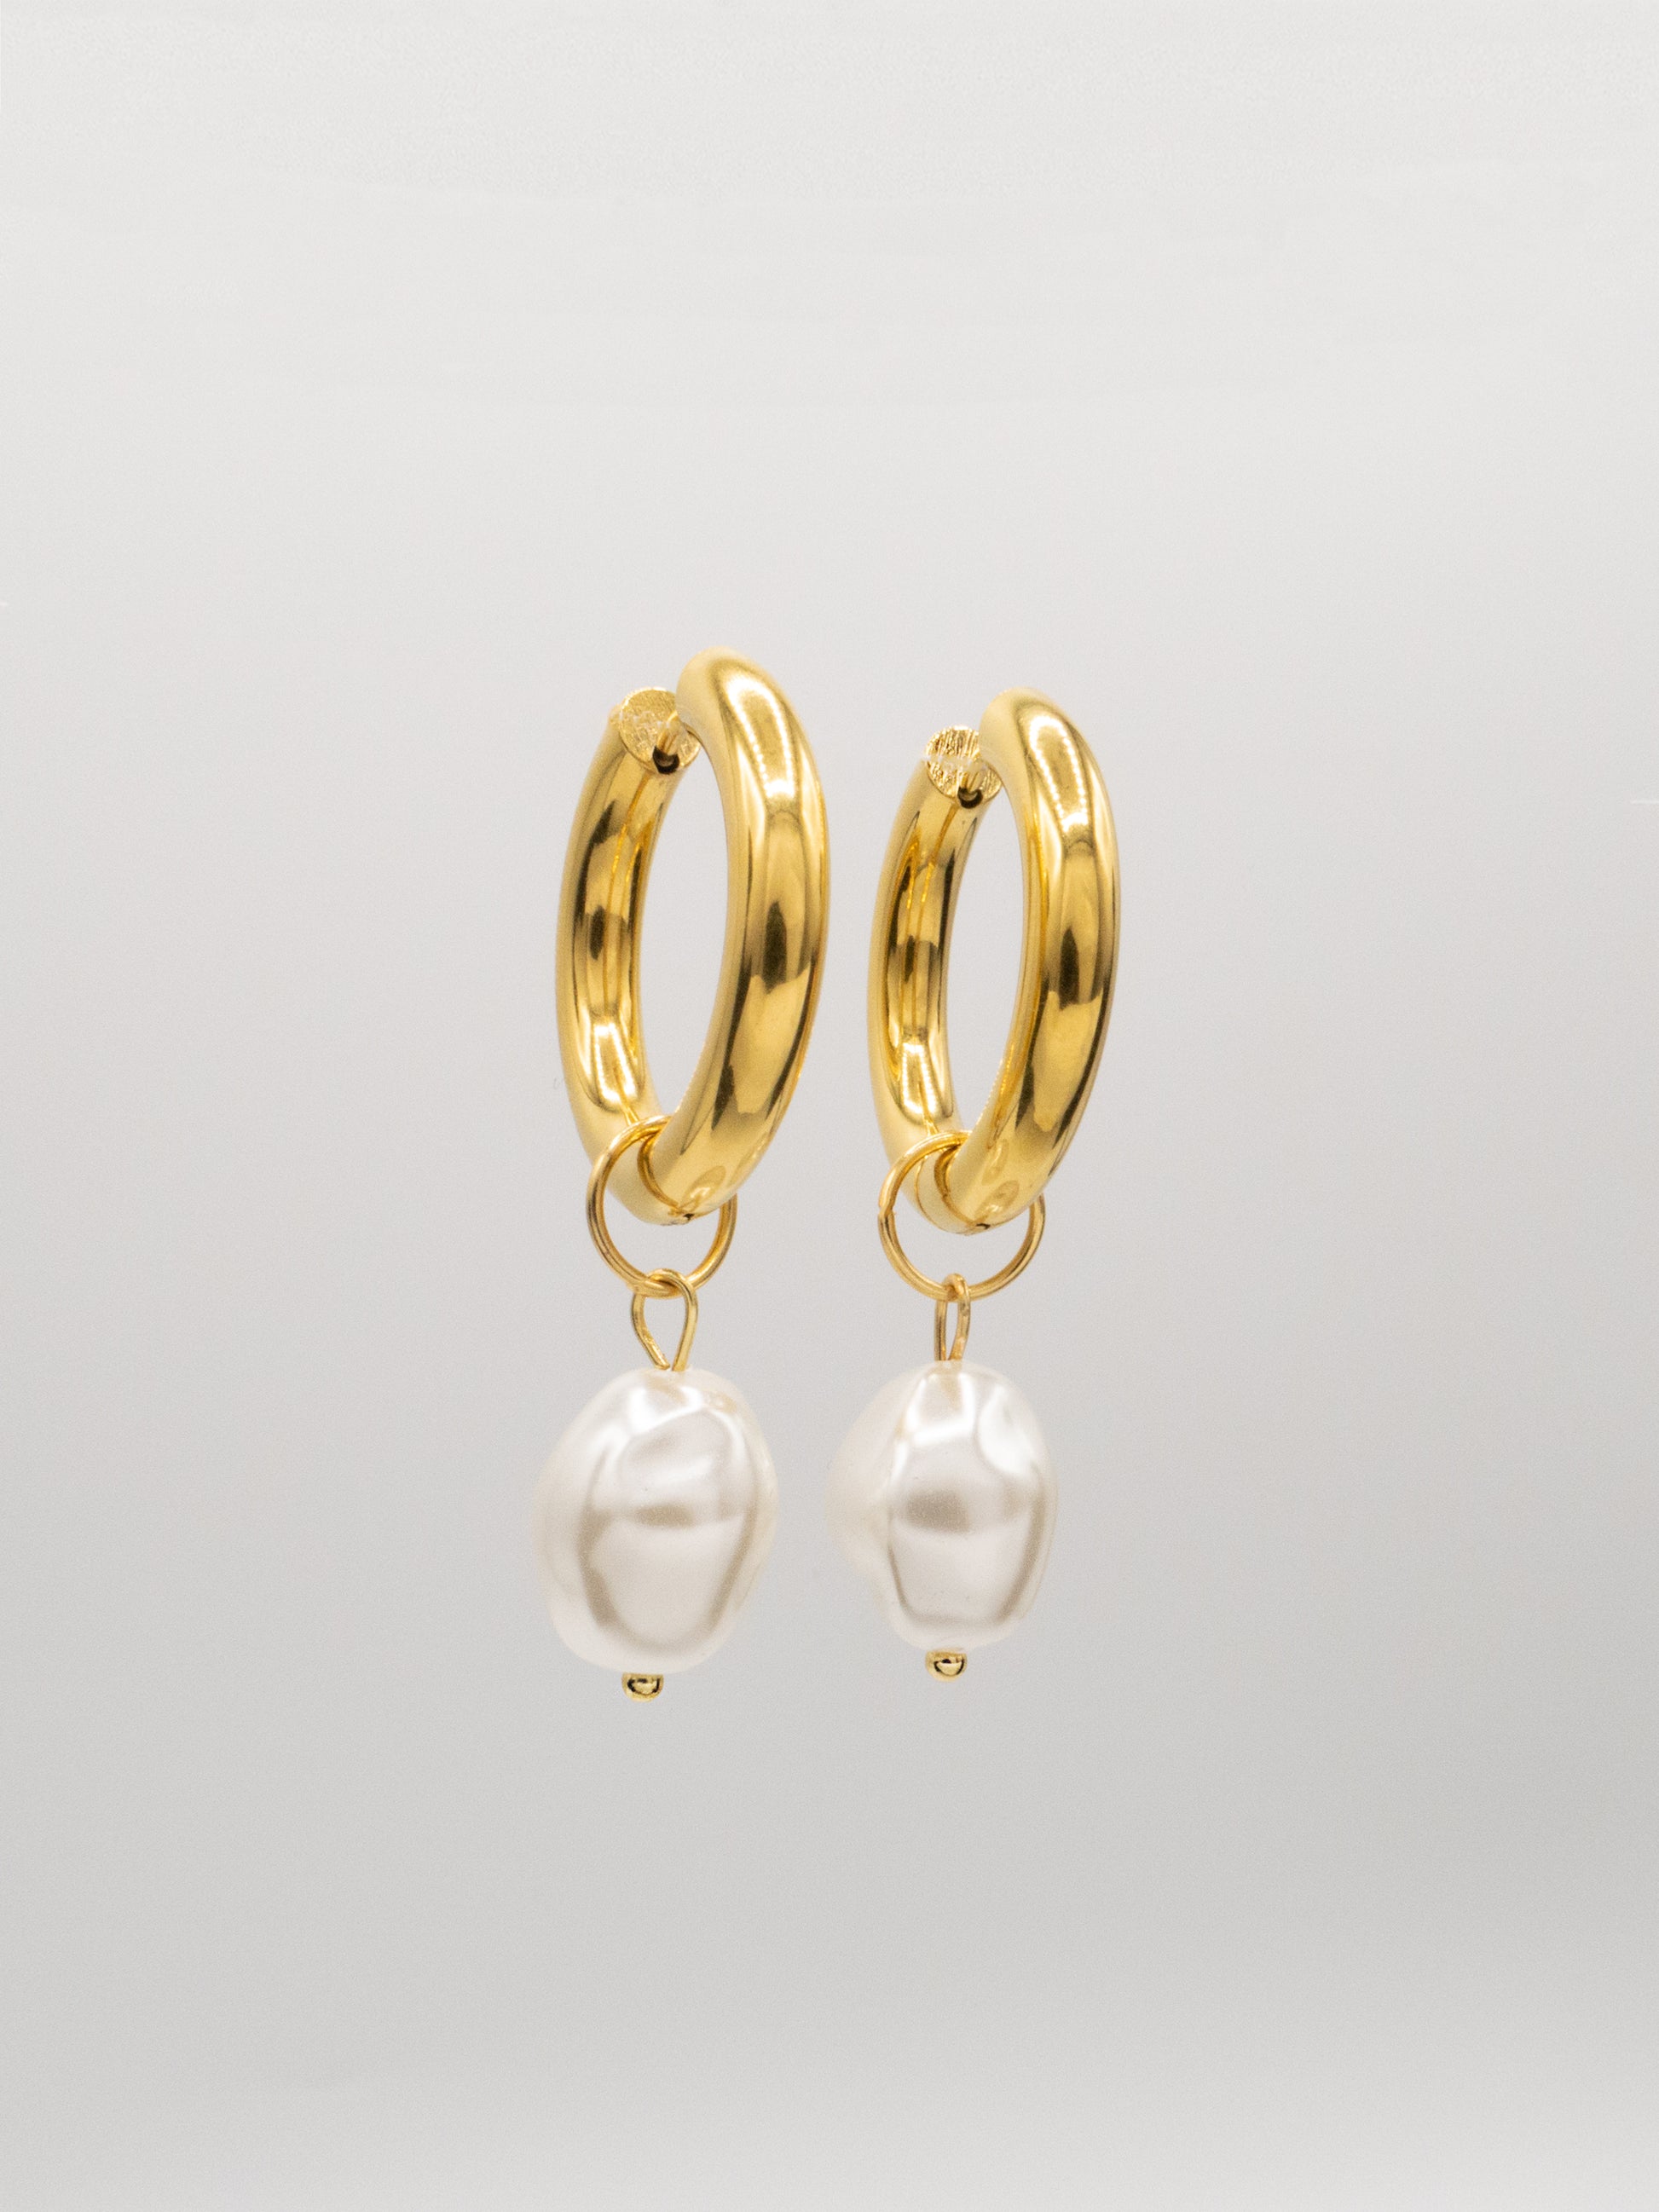 PERLÉ HOOPS | 18K Gold - LILÈ - Earring - LILÈ - online jewellery store - jewelry online - affordable jewellery online Australia